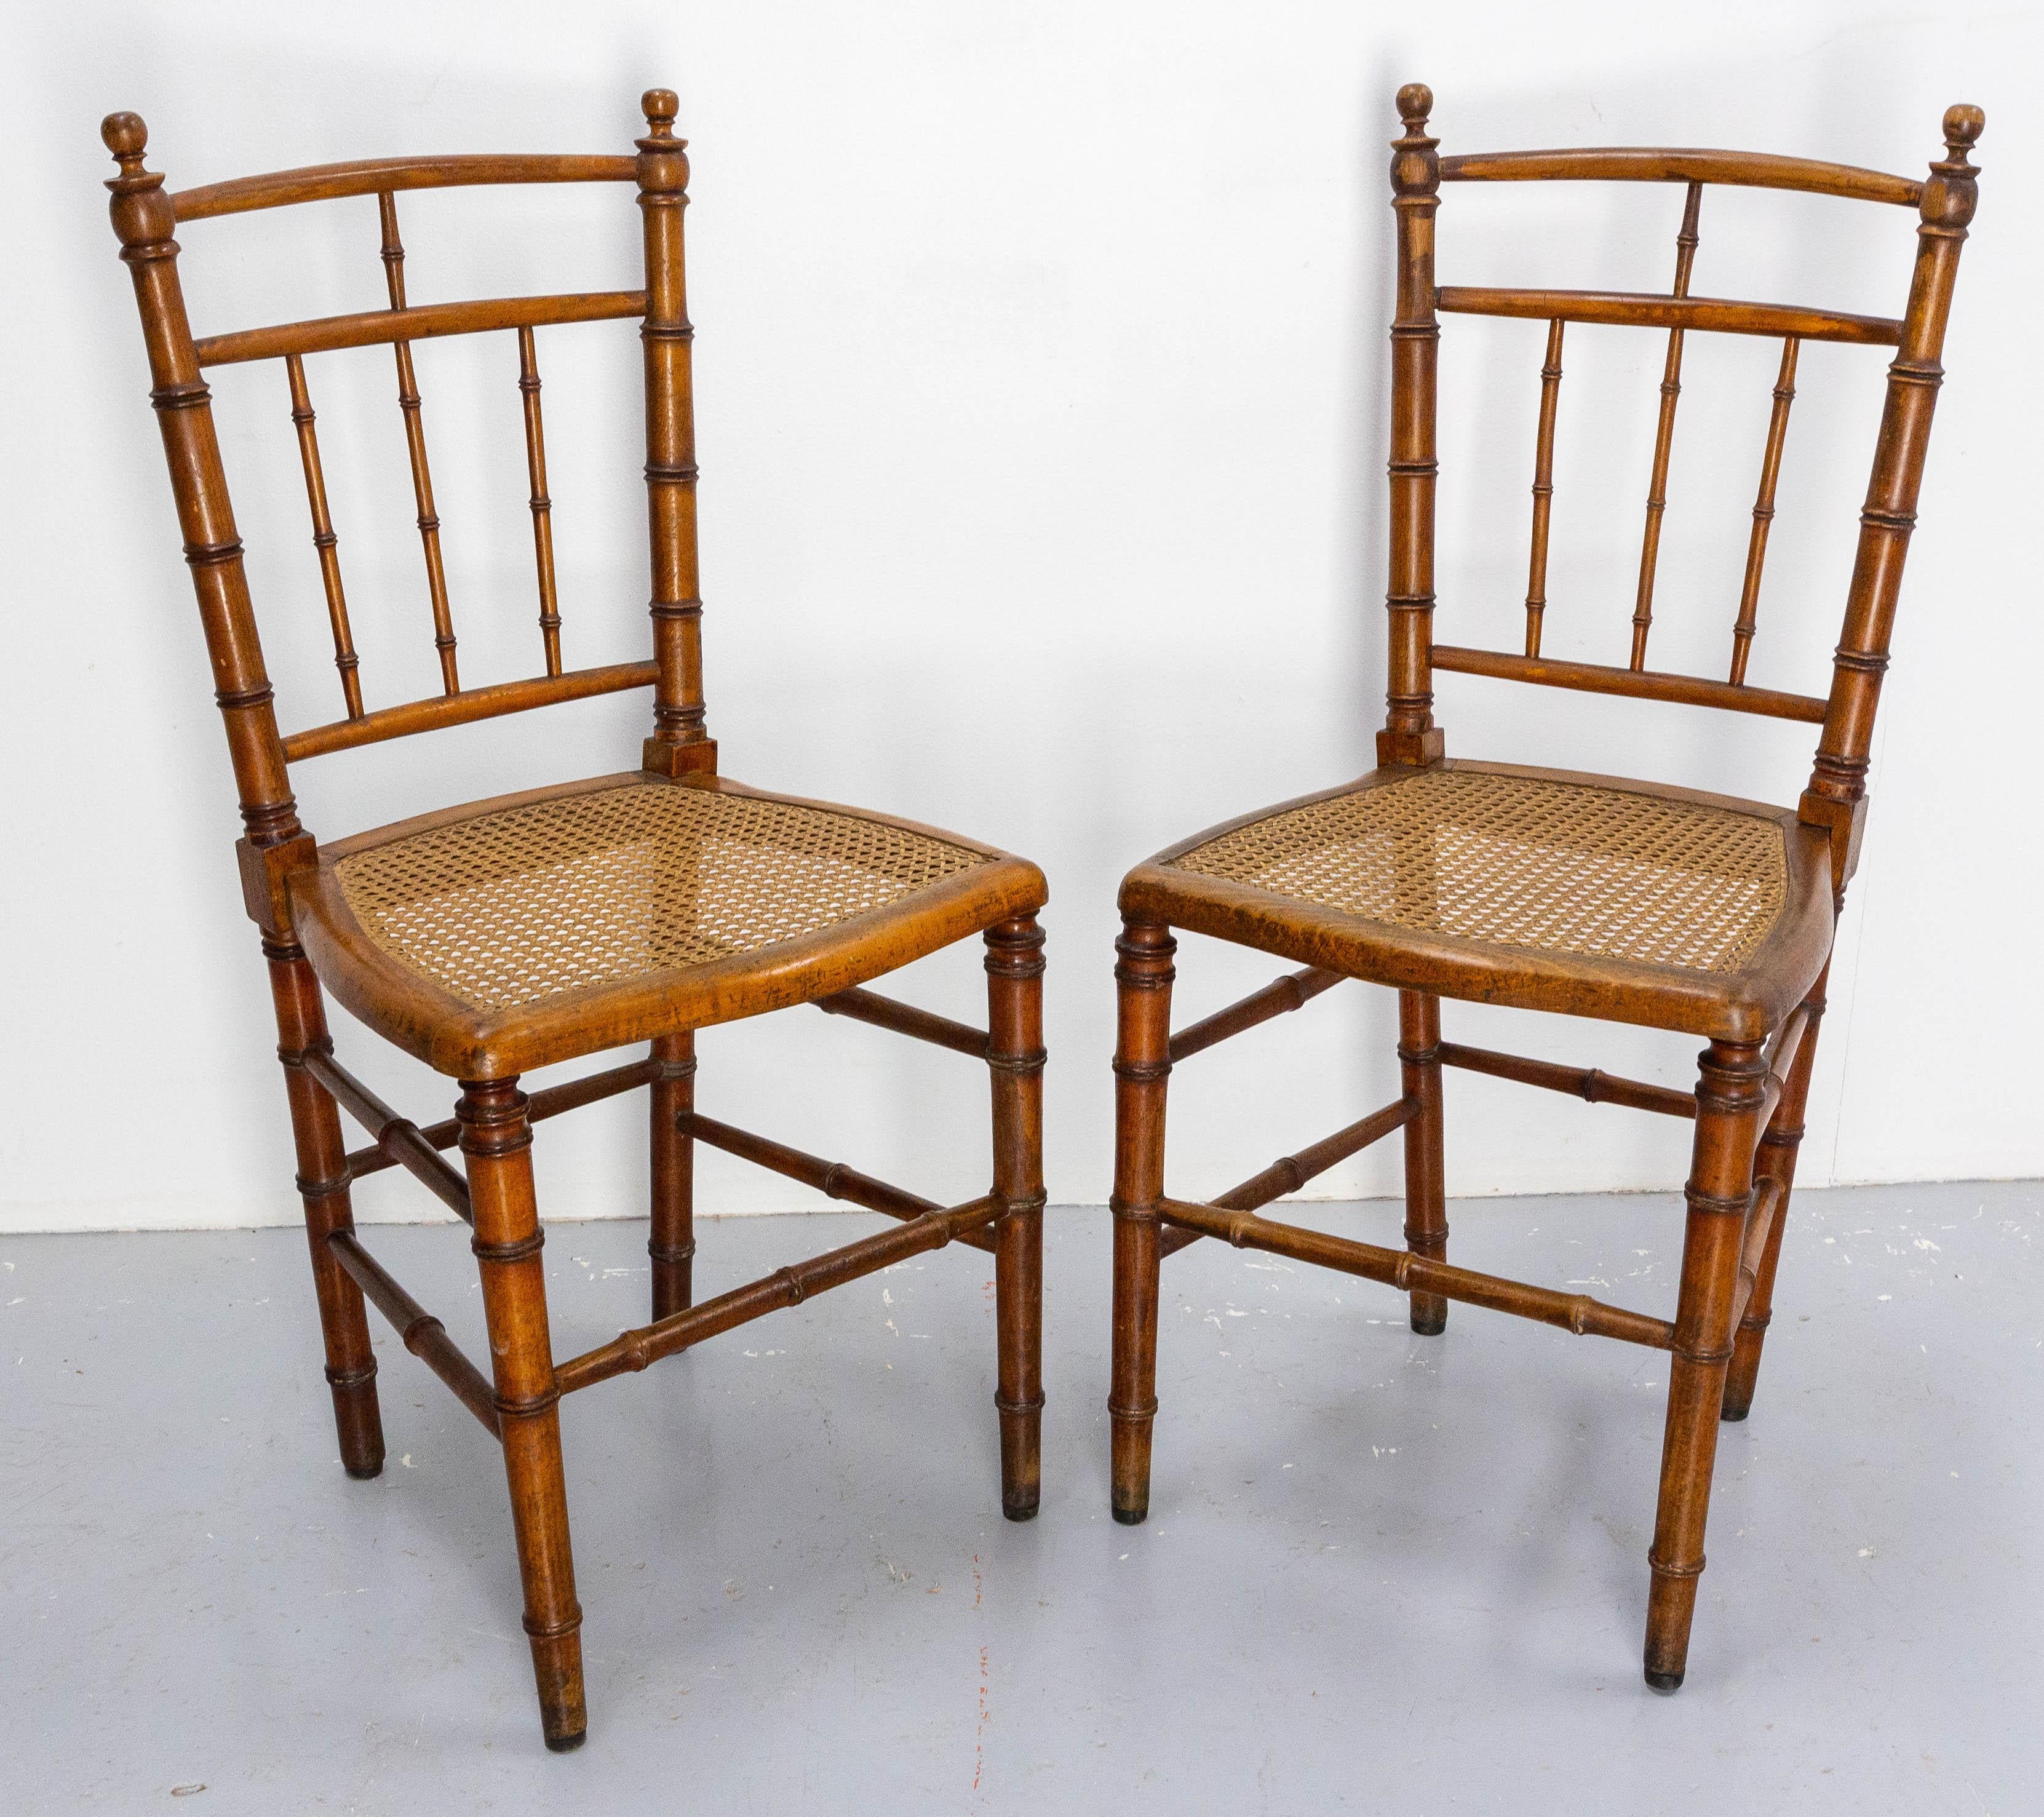 Deux chaises françaises Napoléon III, fabriquées vers 1880. 
Hêtre et cannage en faux-bambou.
Antique, fin du 19e siècle.
Saine et solide.

Expédition :
L42 / H 89 / P 55 cm 13 kg.